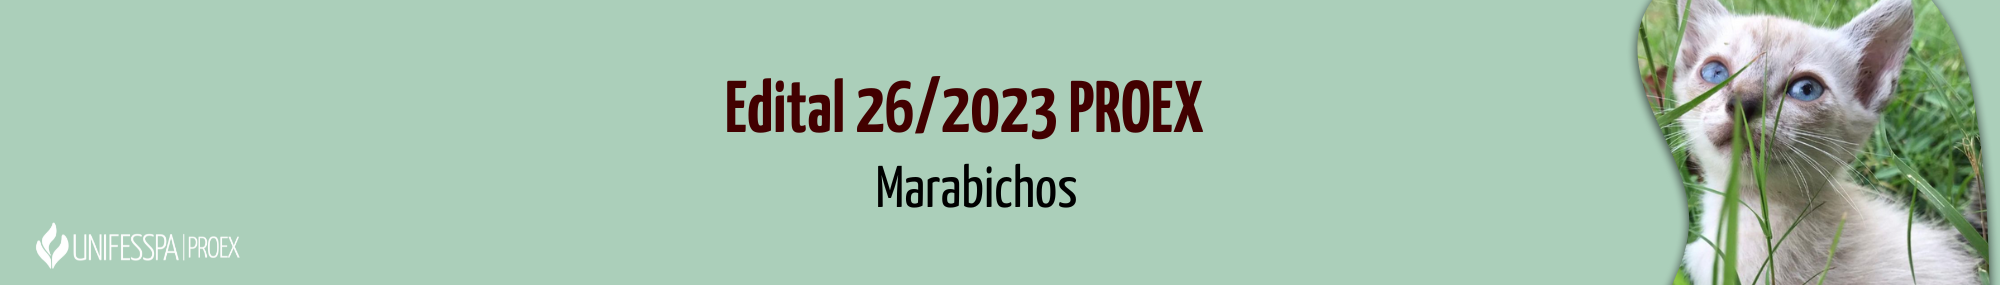 _e-mail marabichos 2023.png